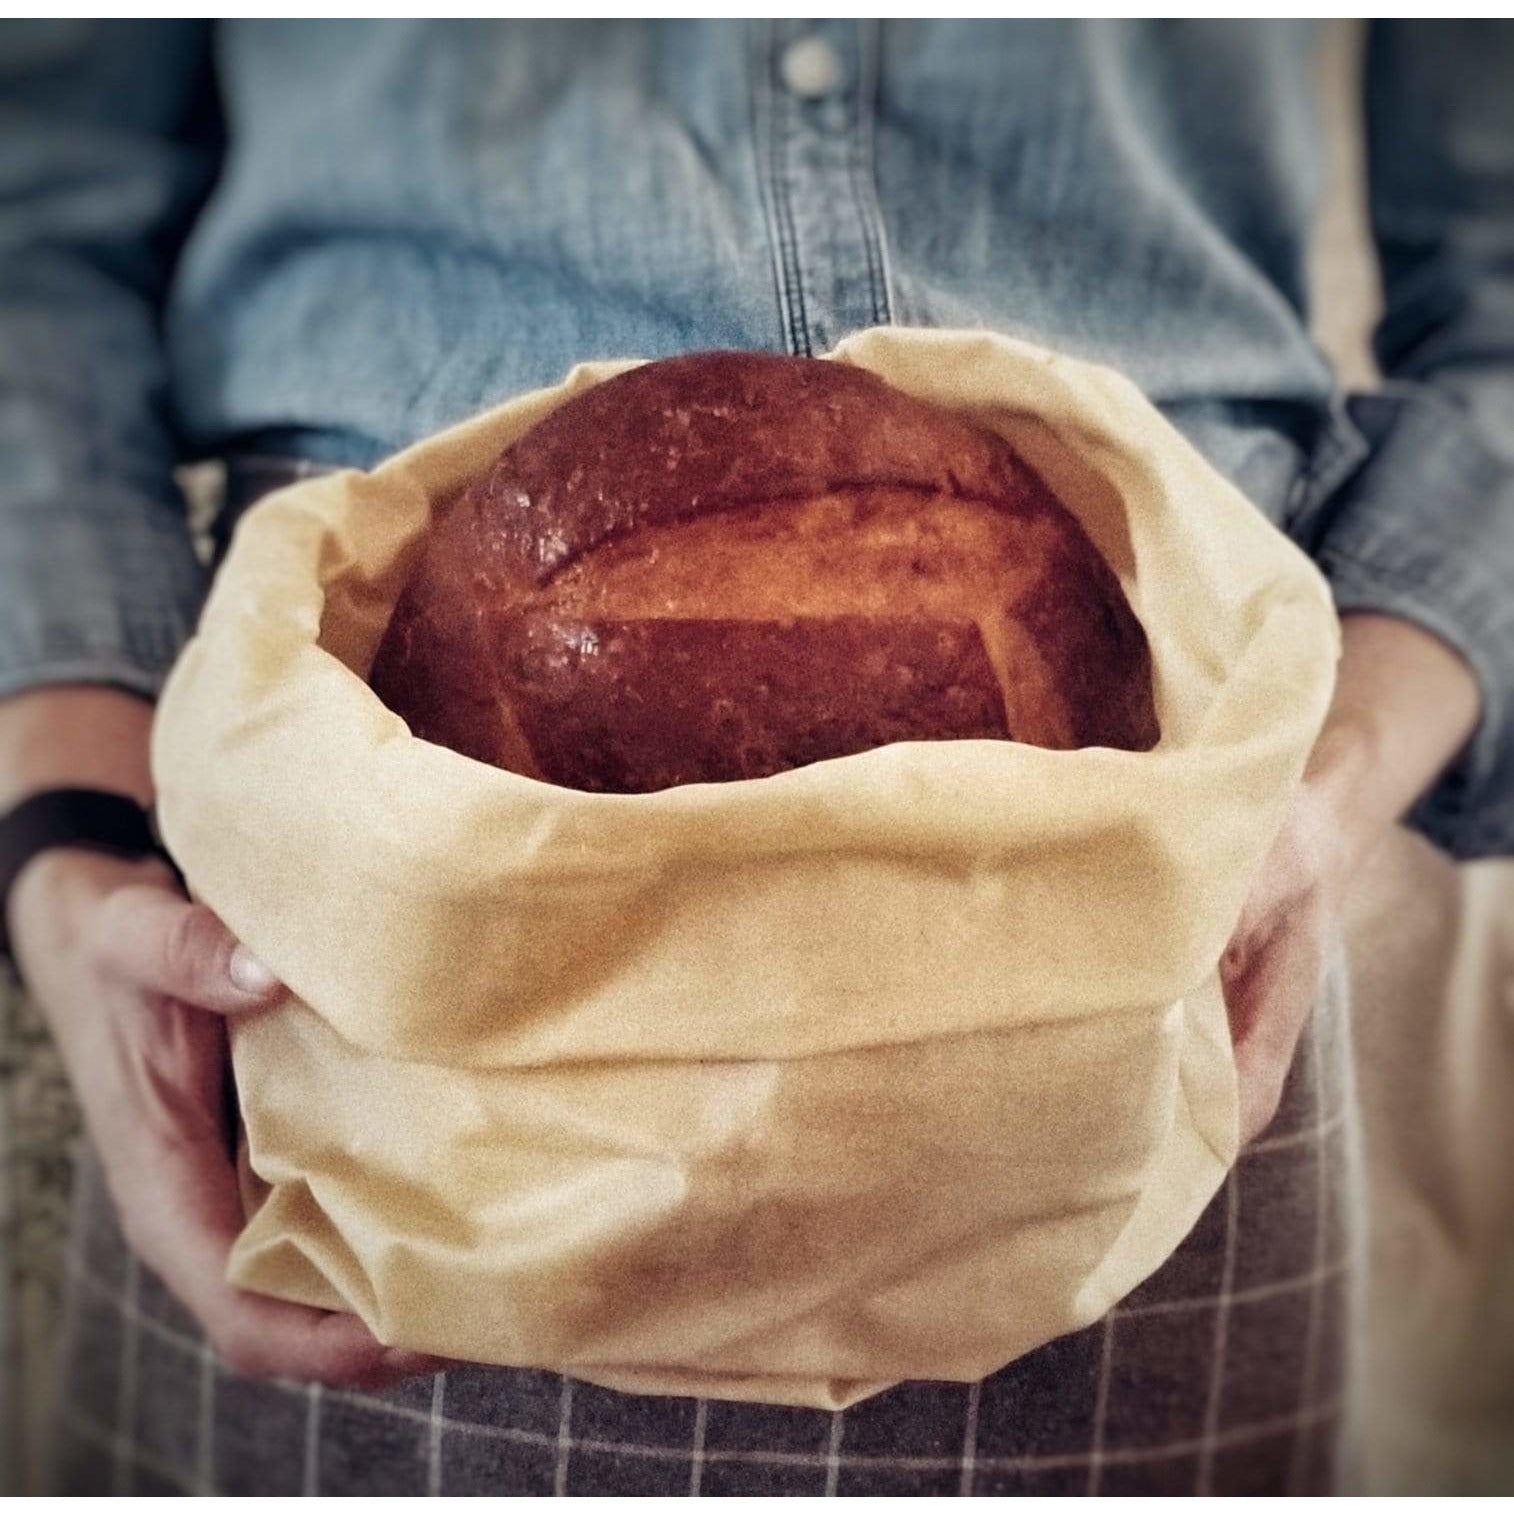 reusable beeswax bread bag with sourdough bread